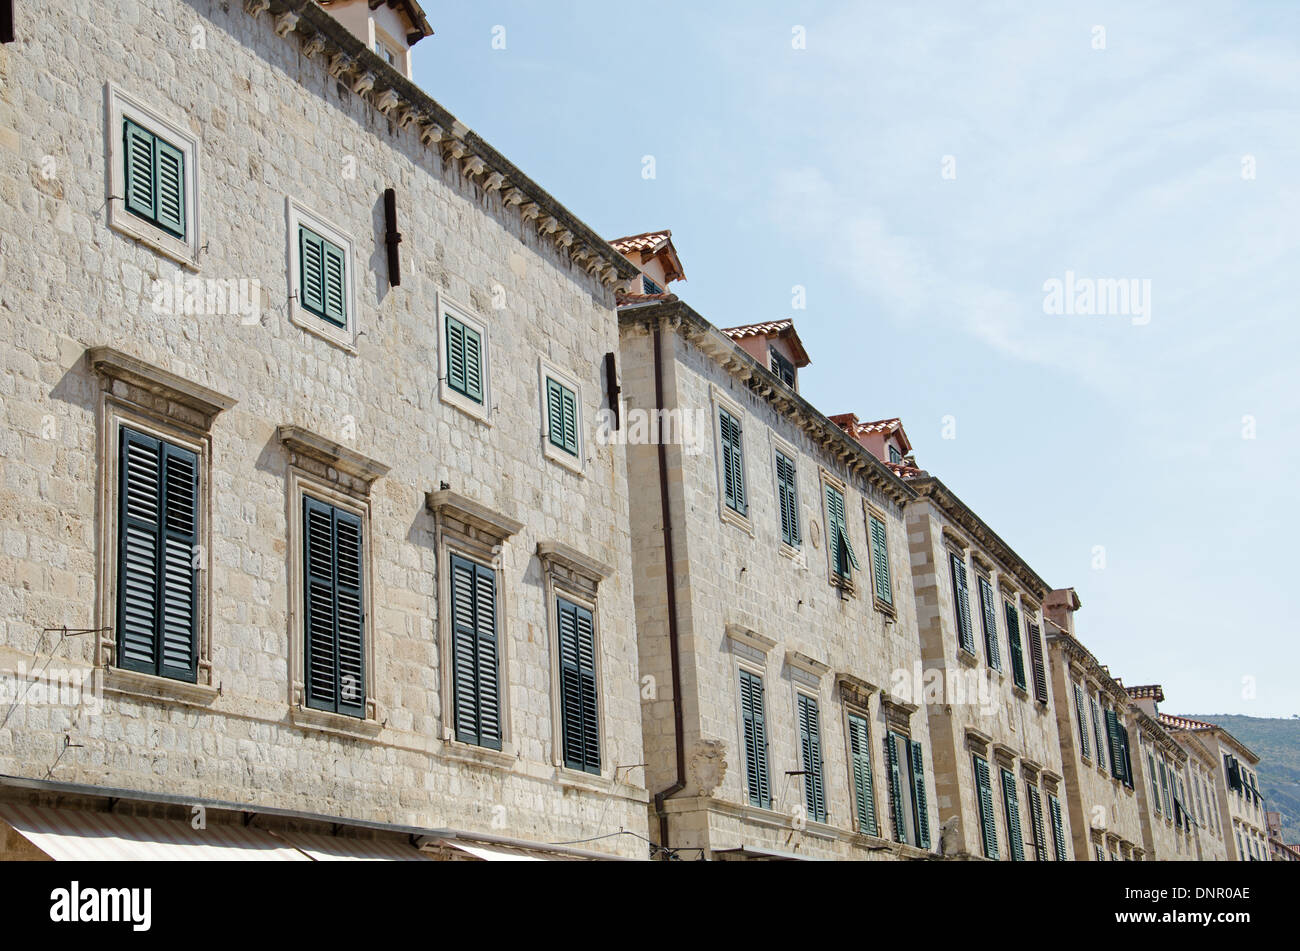 a facade in Dubrovnik Stock Photo